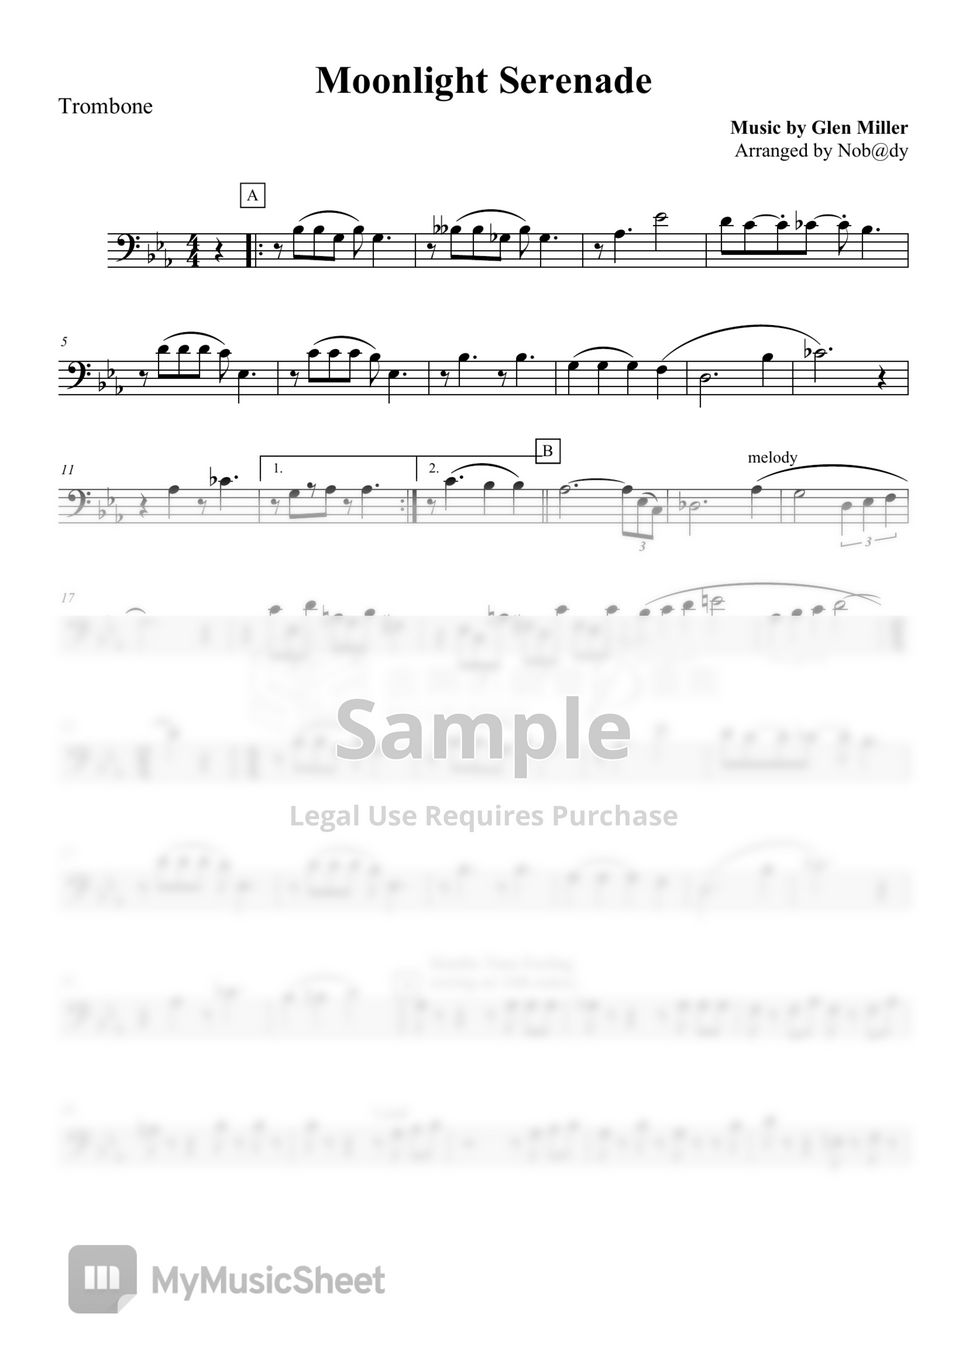 Glenn Miller - Moonlight Serenade-Brass Quintet by Nob@dy